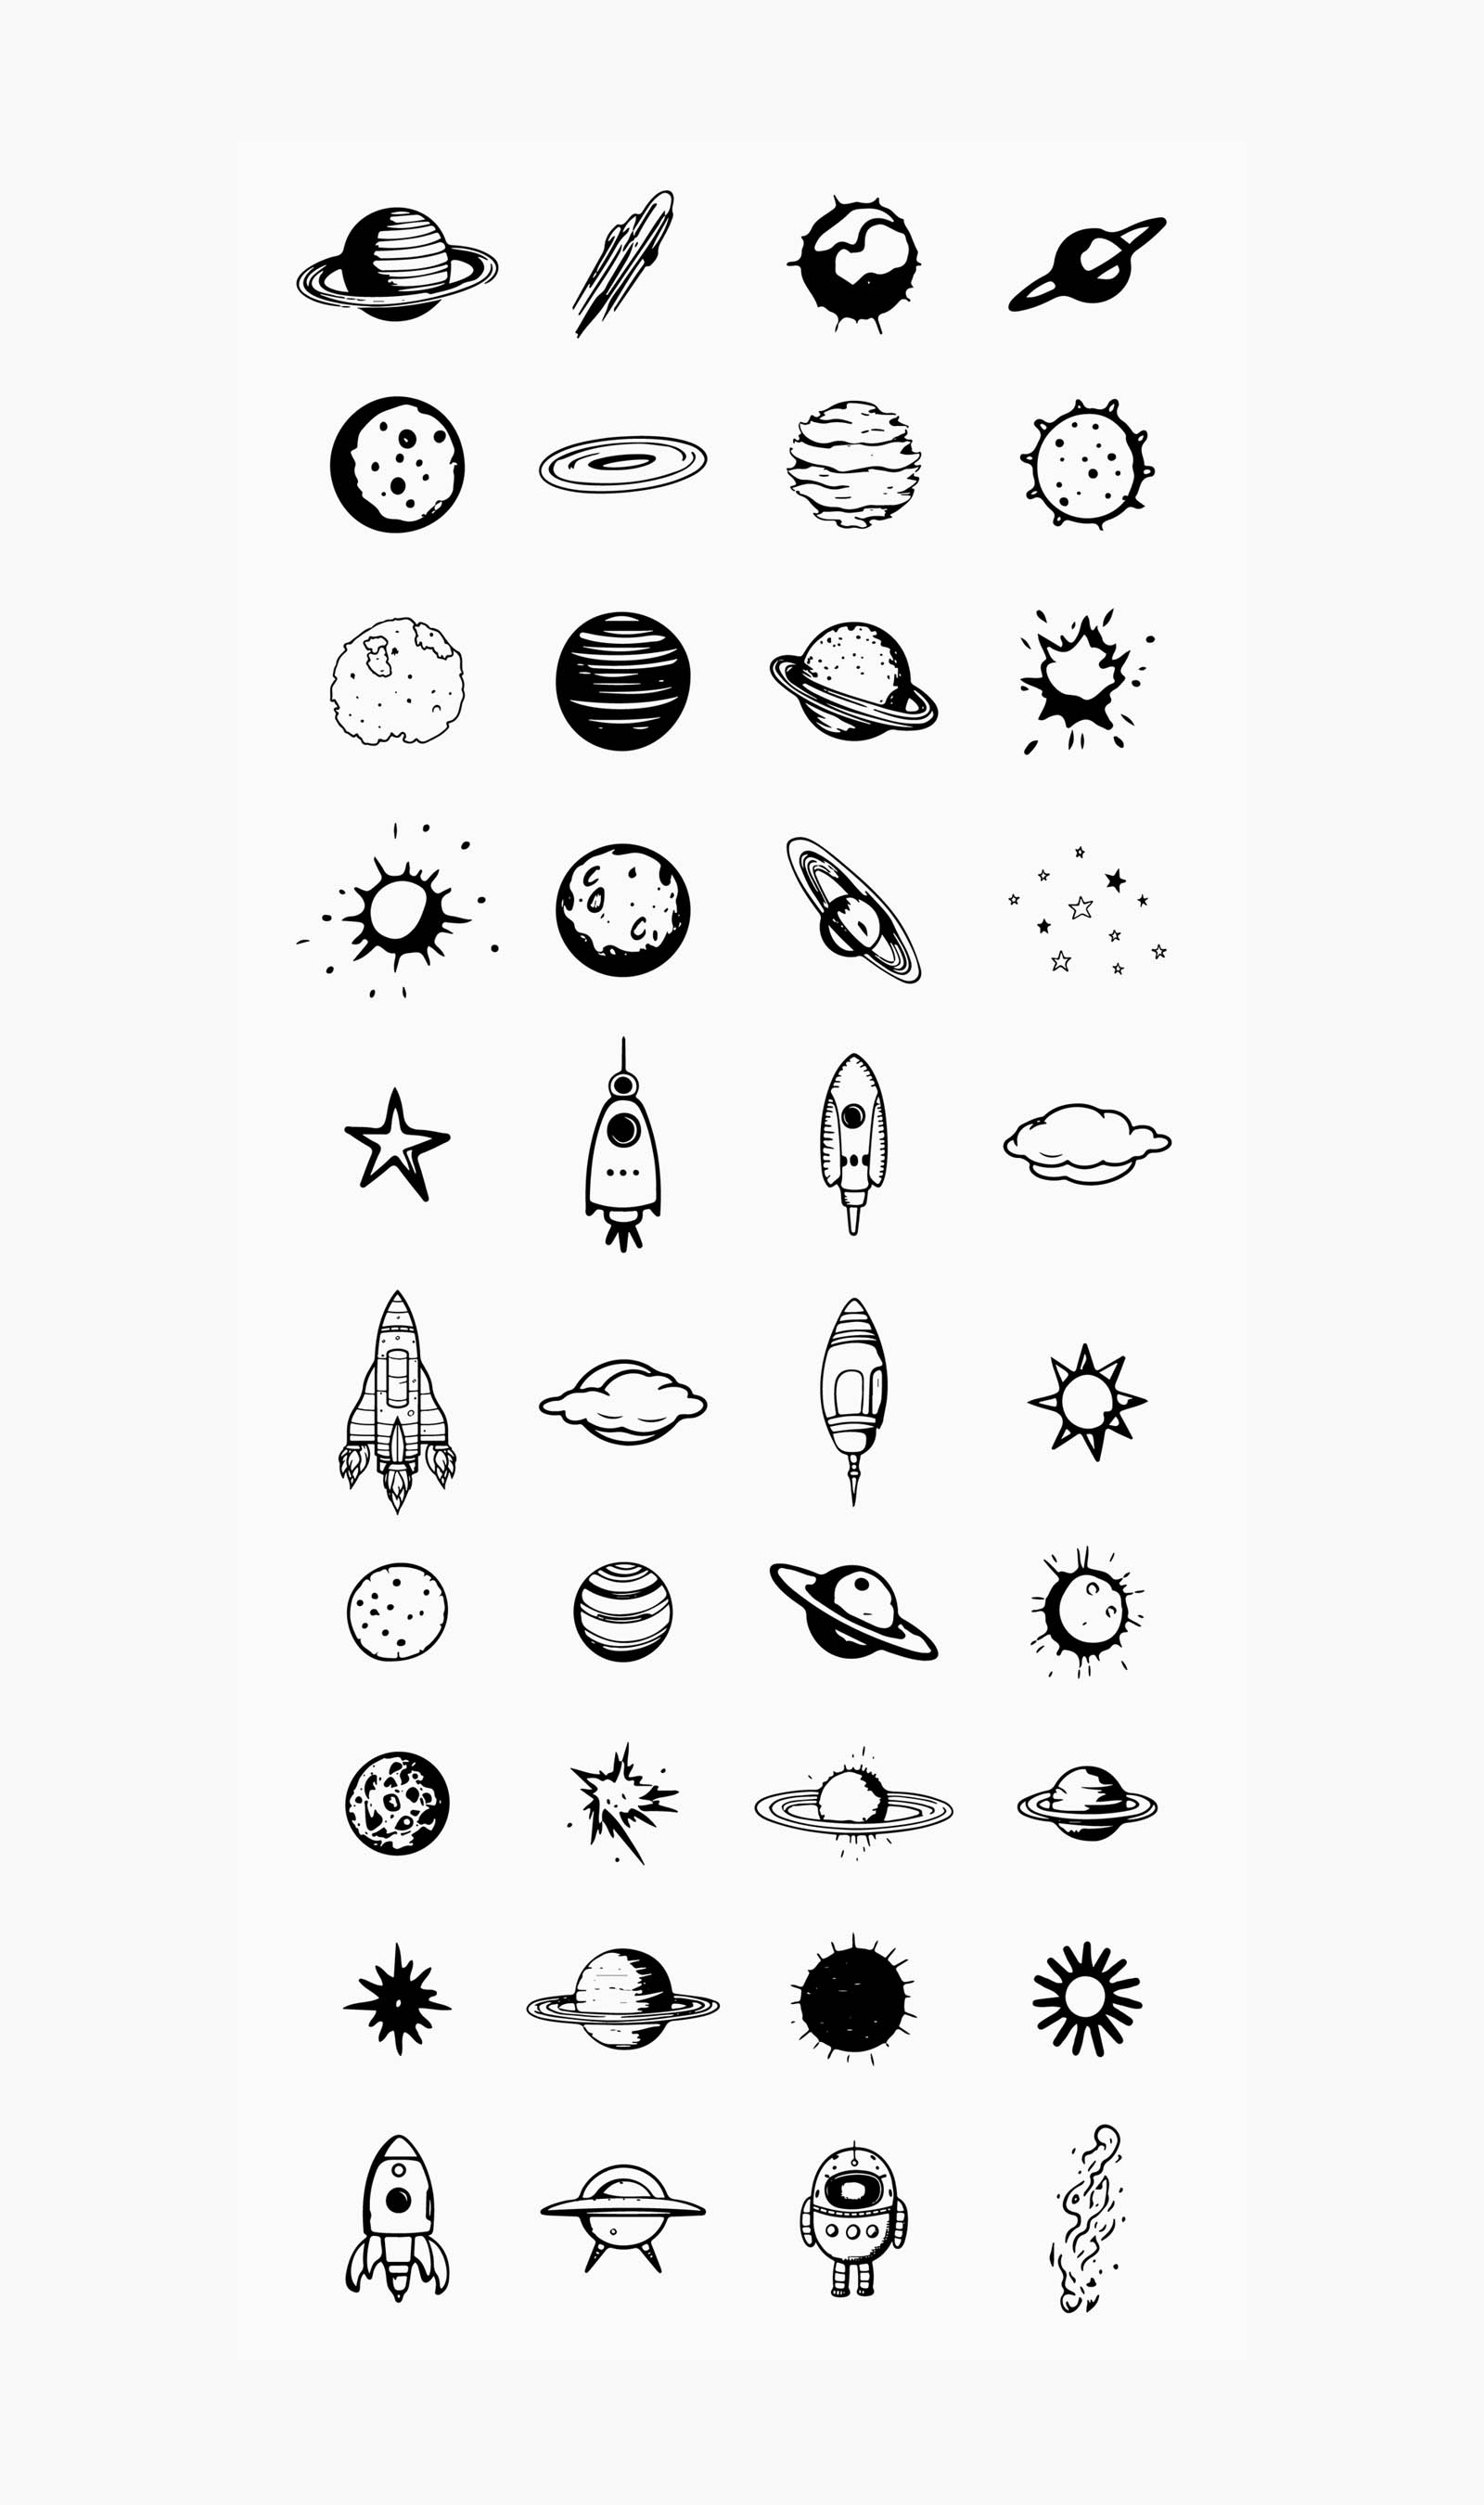 Vector space doodles